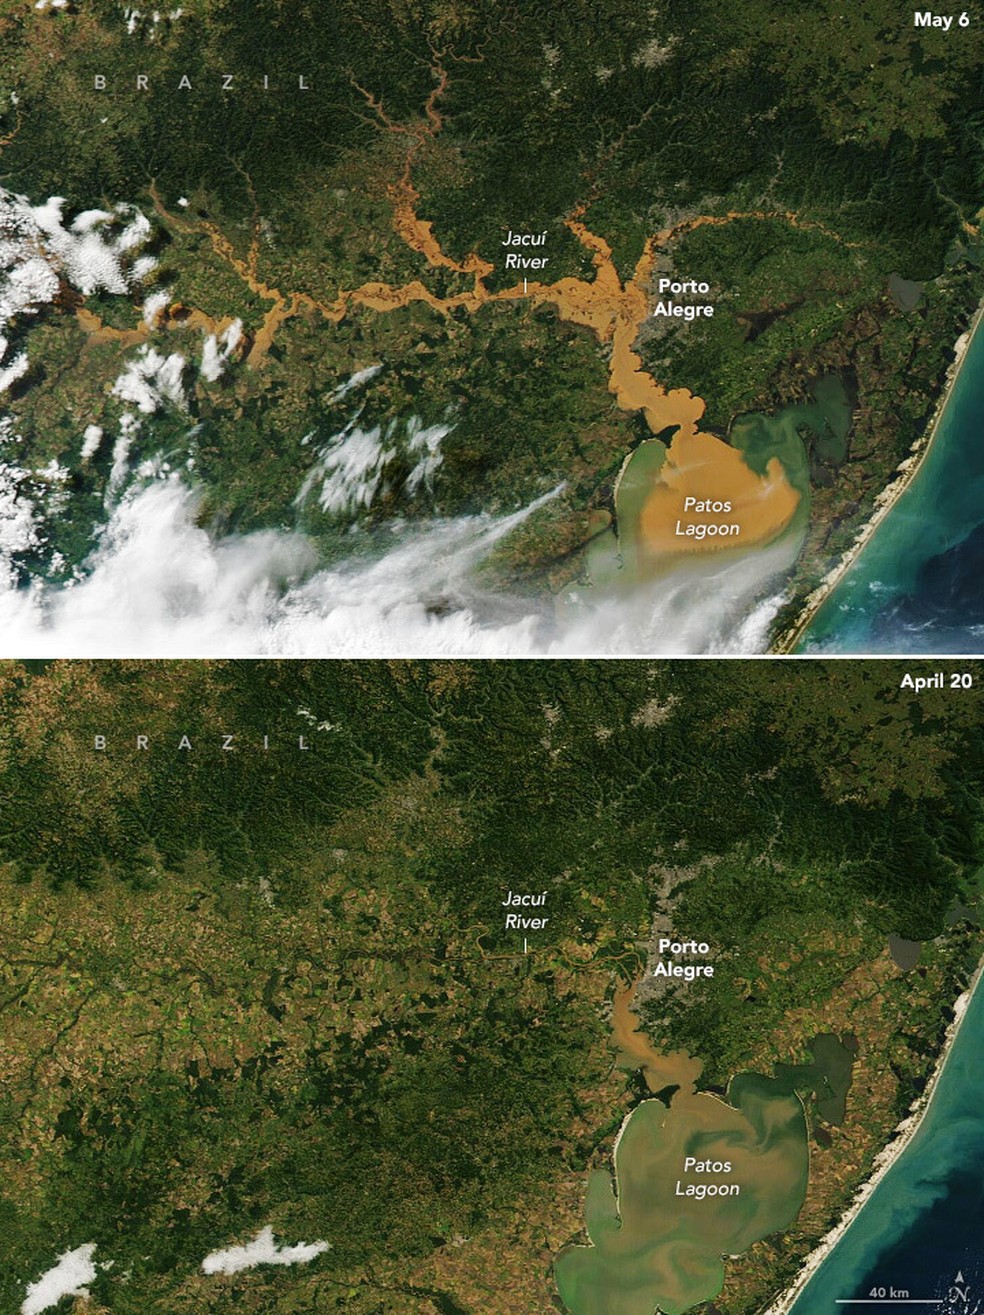 Imagens do sistema Modis, da Nasa, mostram a Lagoa dos Patos e rios gaúchos depois e antes da cheia — Foto: Modis-Nasa/Divulgação